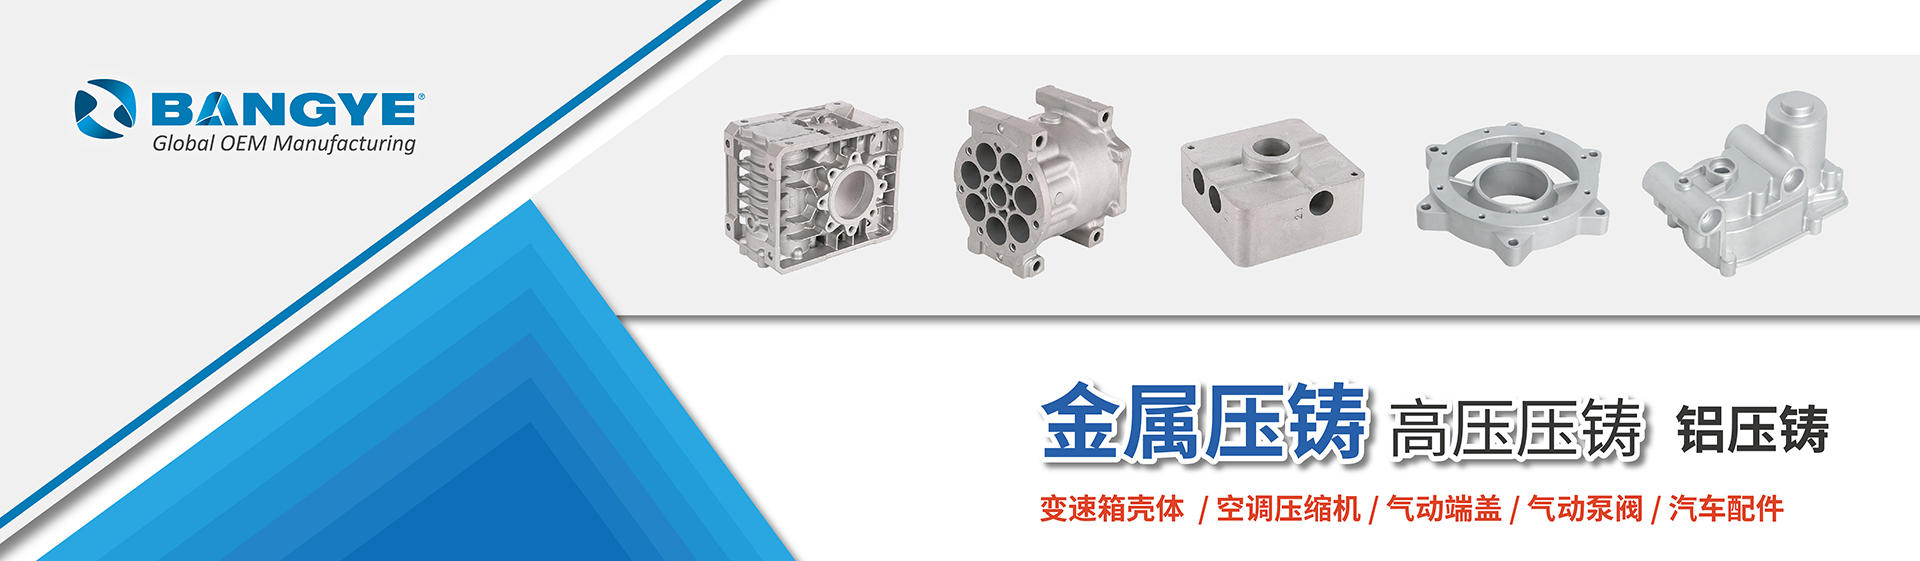 Zhejiang Bangye Automation Technology Co., Ltd.